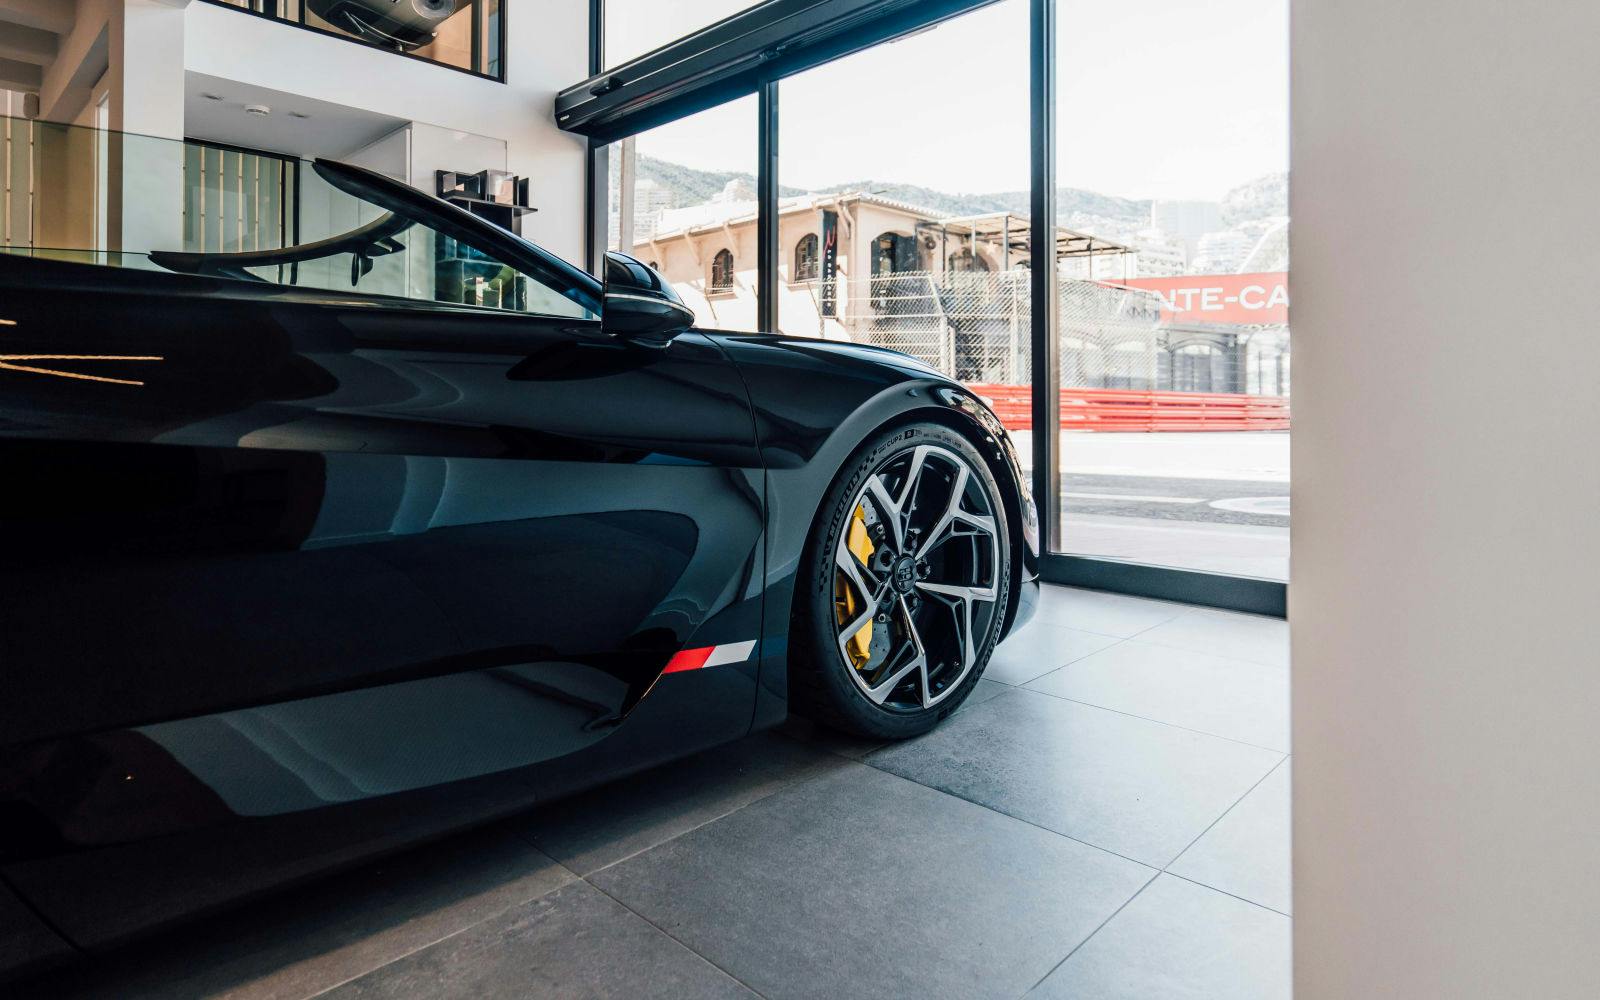 Der Standort des neuen Showrooms von Bugatti Monaco ist eine Hommage an die glorreiche Vergangenheit der Marke im Motorsport.